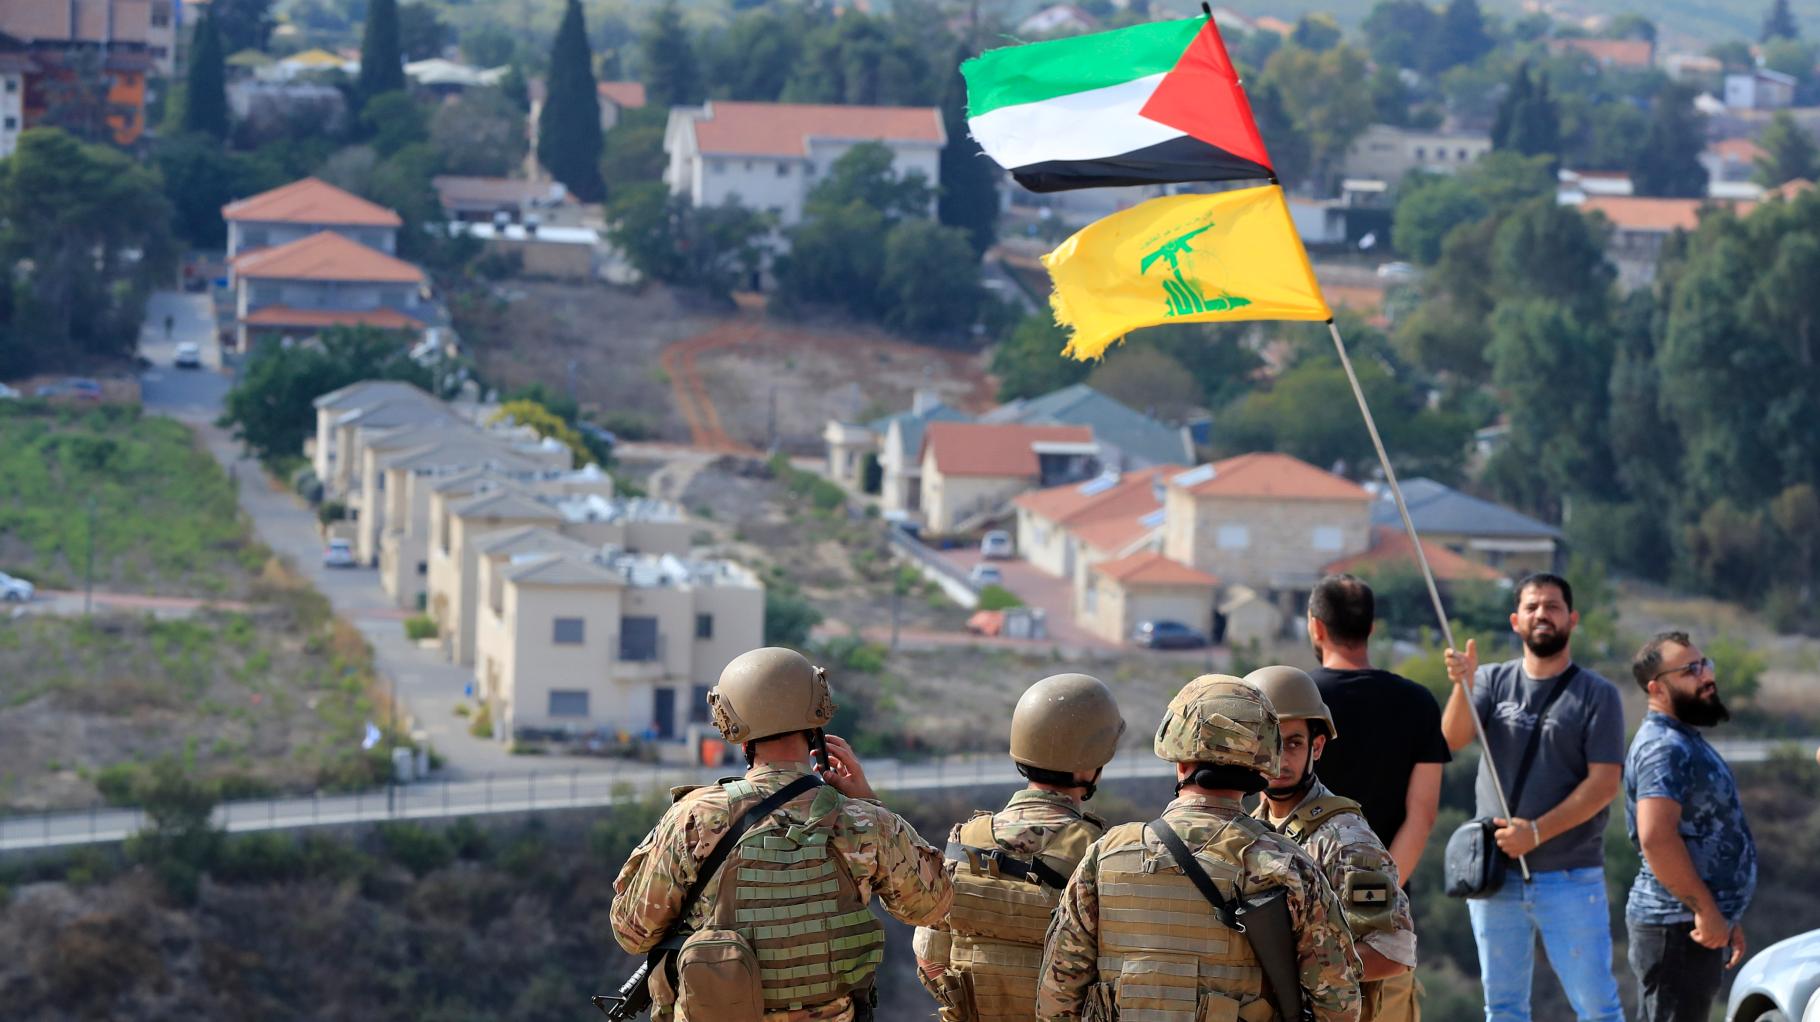 Libanesische Hisbollah feuert auf Israel – Vergeltung für Tod mehrerer Anhänger